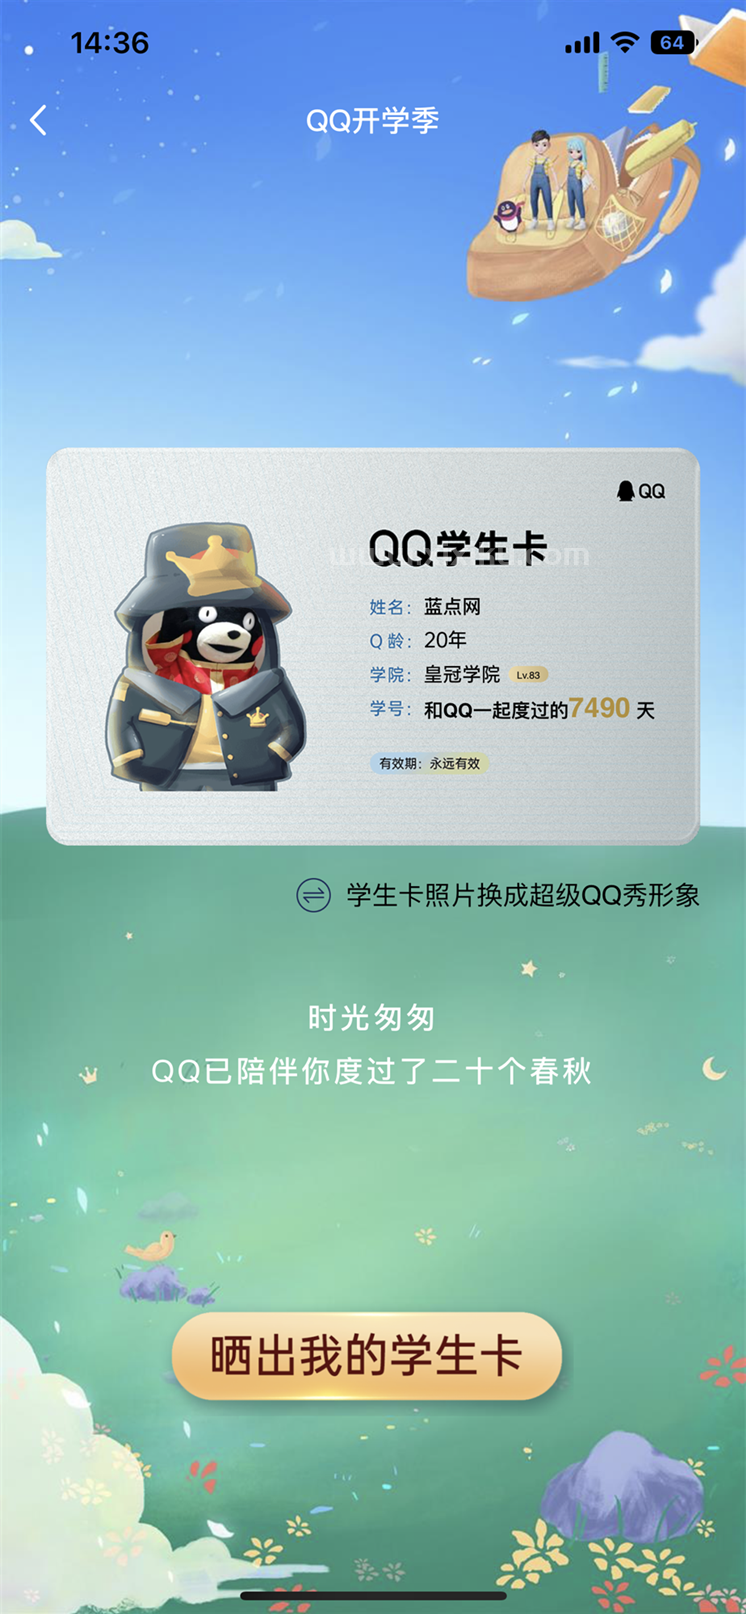 滴！学生卡！腾讯QQ赶在开学之际上线QQ学生卡 可以查看Q龄设置QQ秀